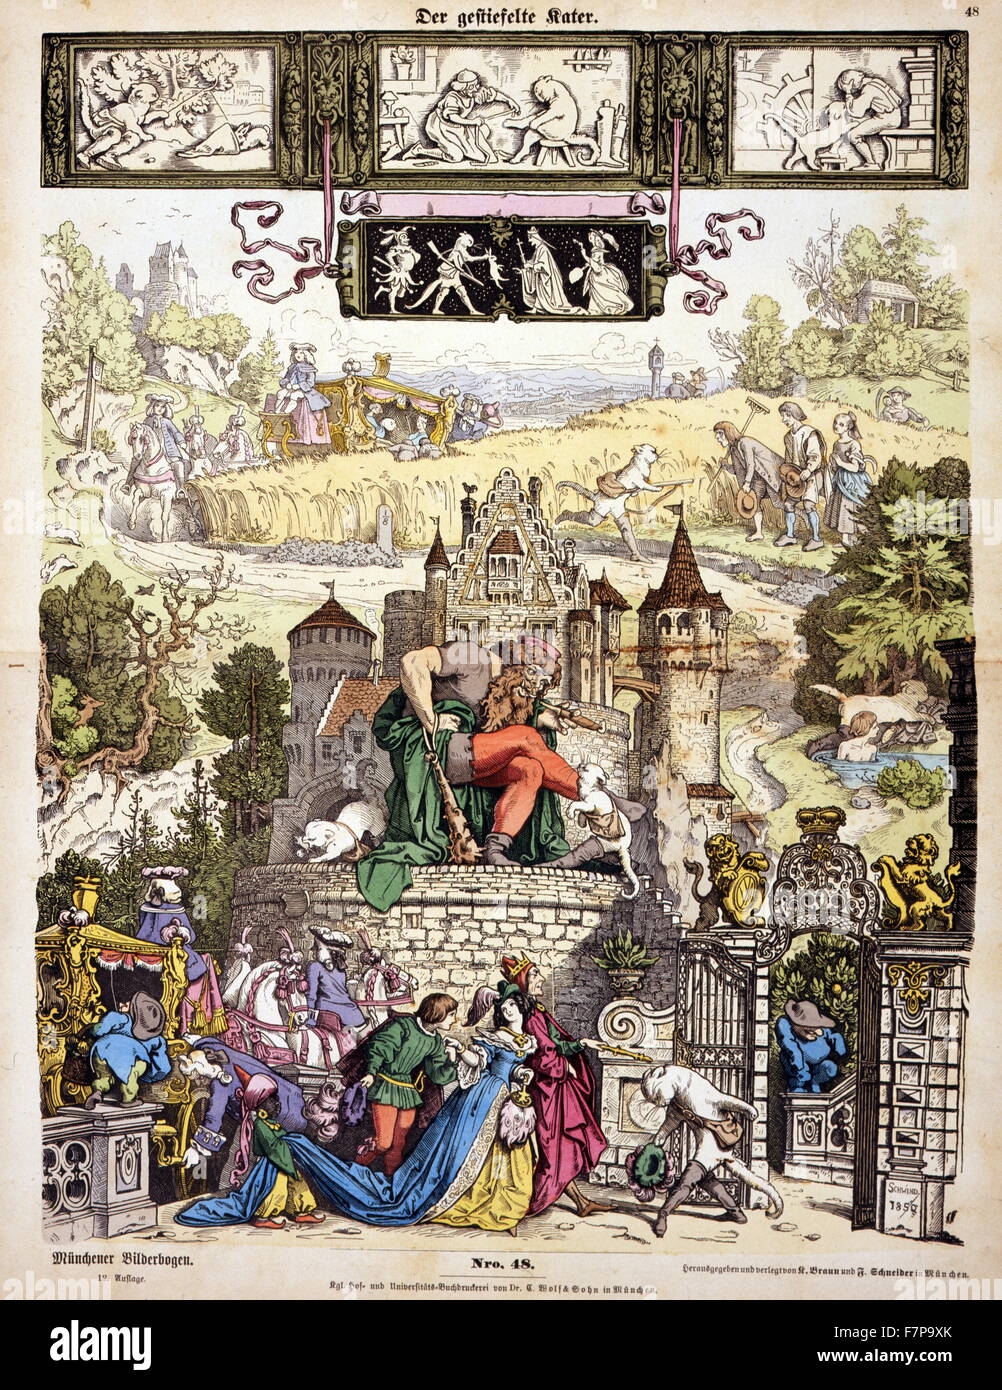 L'impression. L'illustration montre des scènes de conte de fée Chat botté. Moritz von Schwind est artiste (1804-1871). Banque D'Images